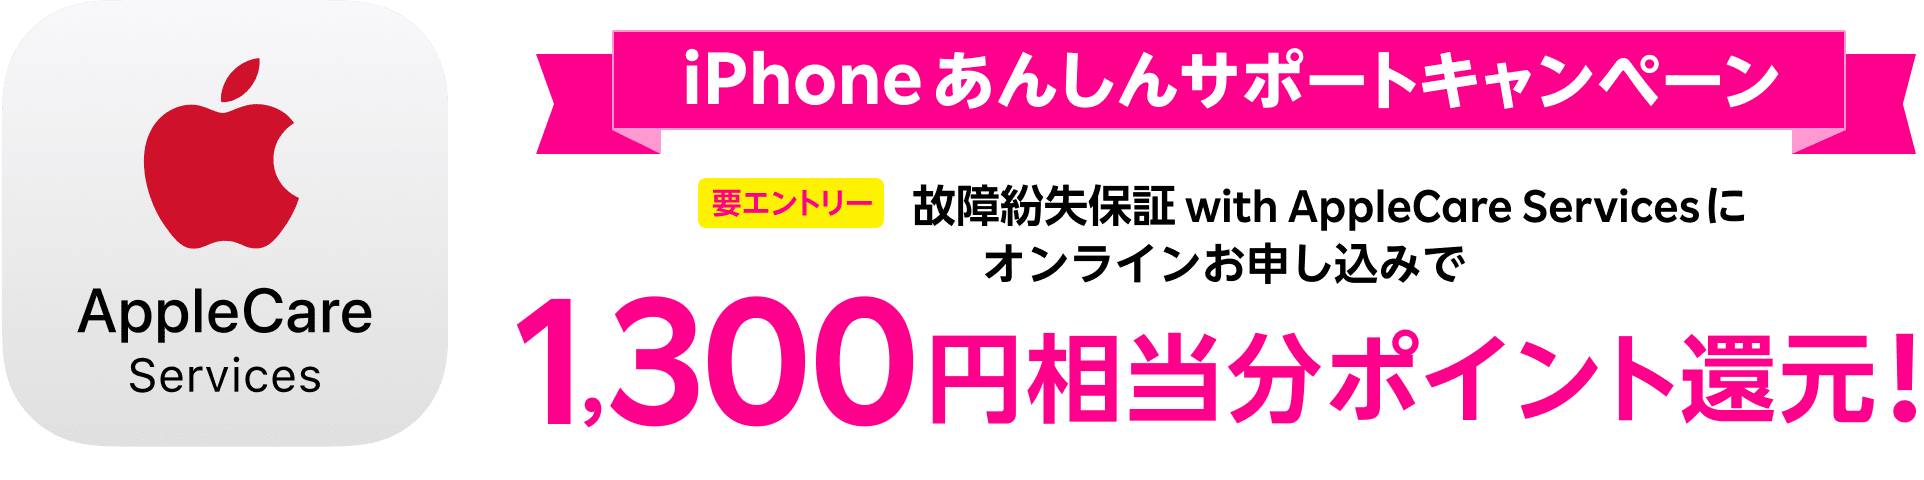 【楽天モバイル】 AppleCare保証加入で1,300円相当のポイント還元！